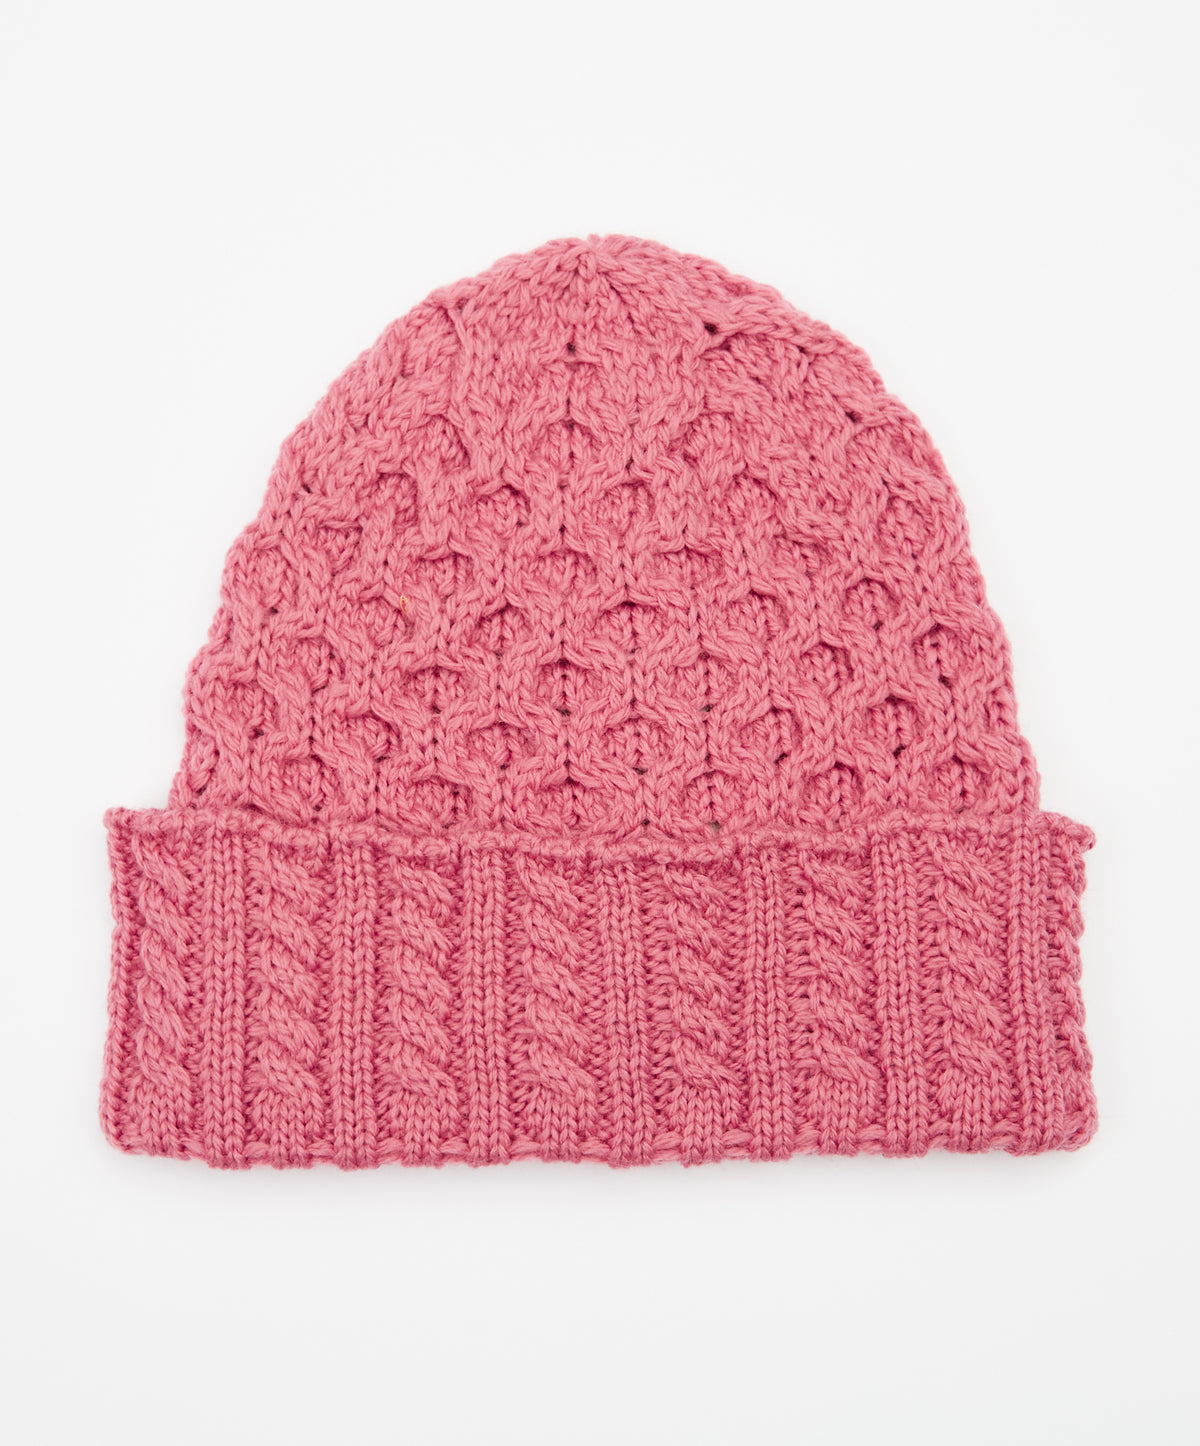 IrelandsEye Knitwear Aran Hat Rosa Pink